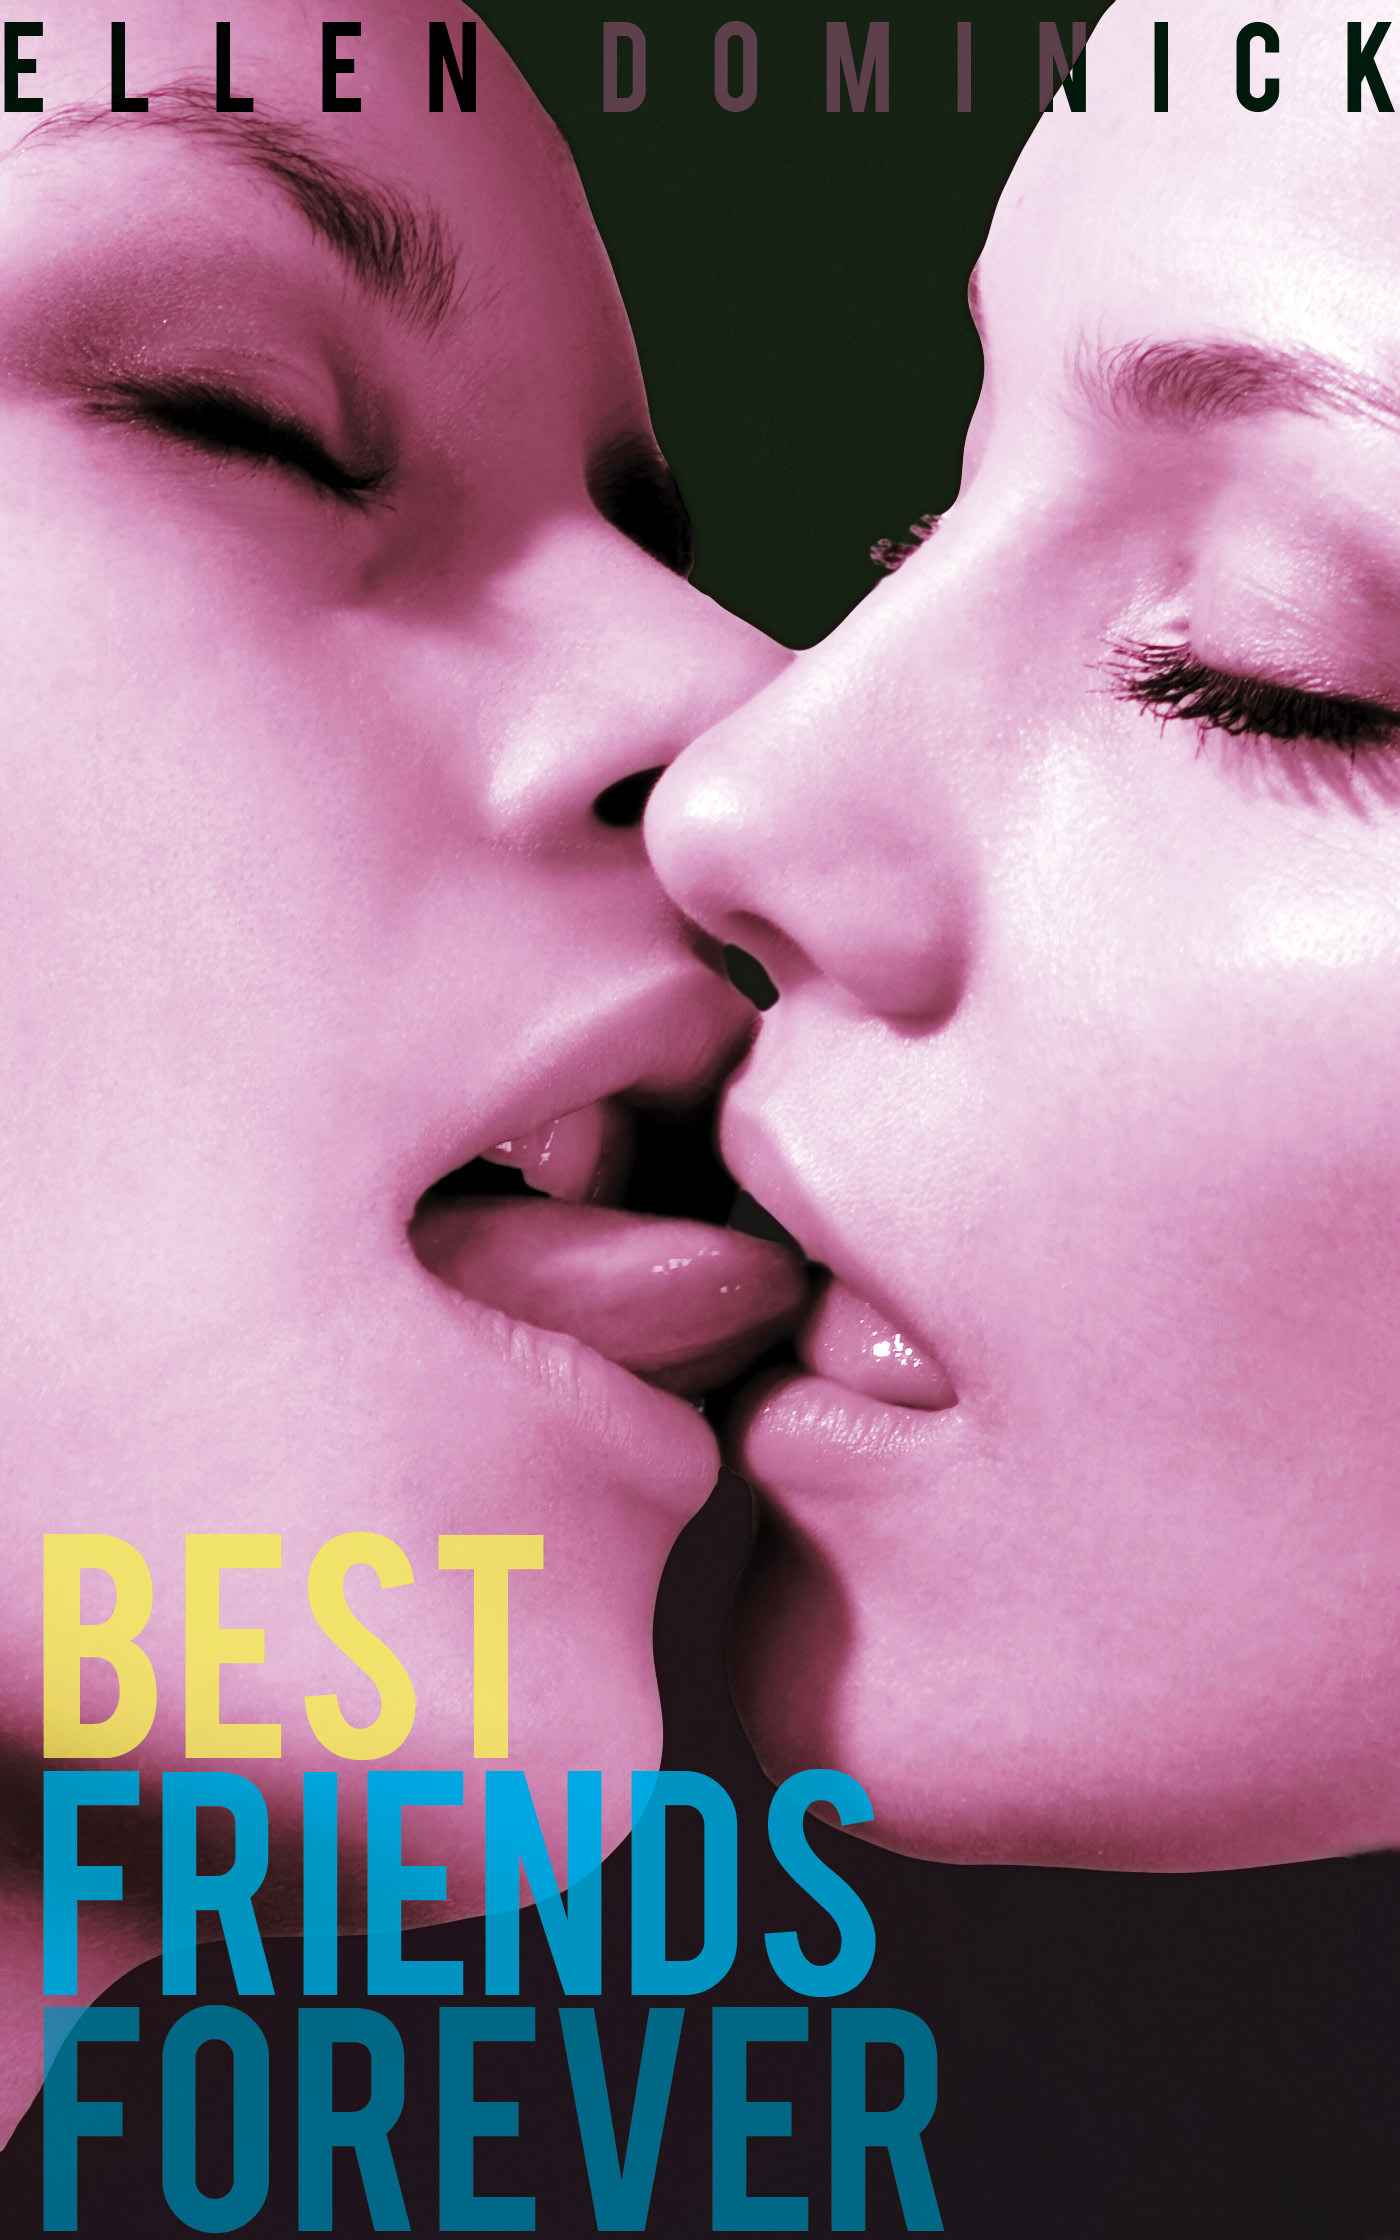 Best Friends Forever A Virgin Lesbian First Time Experience — Ellen Dominick